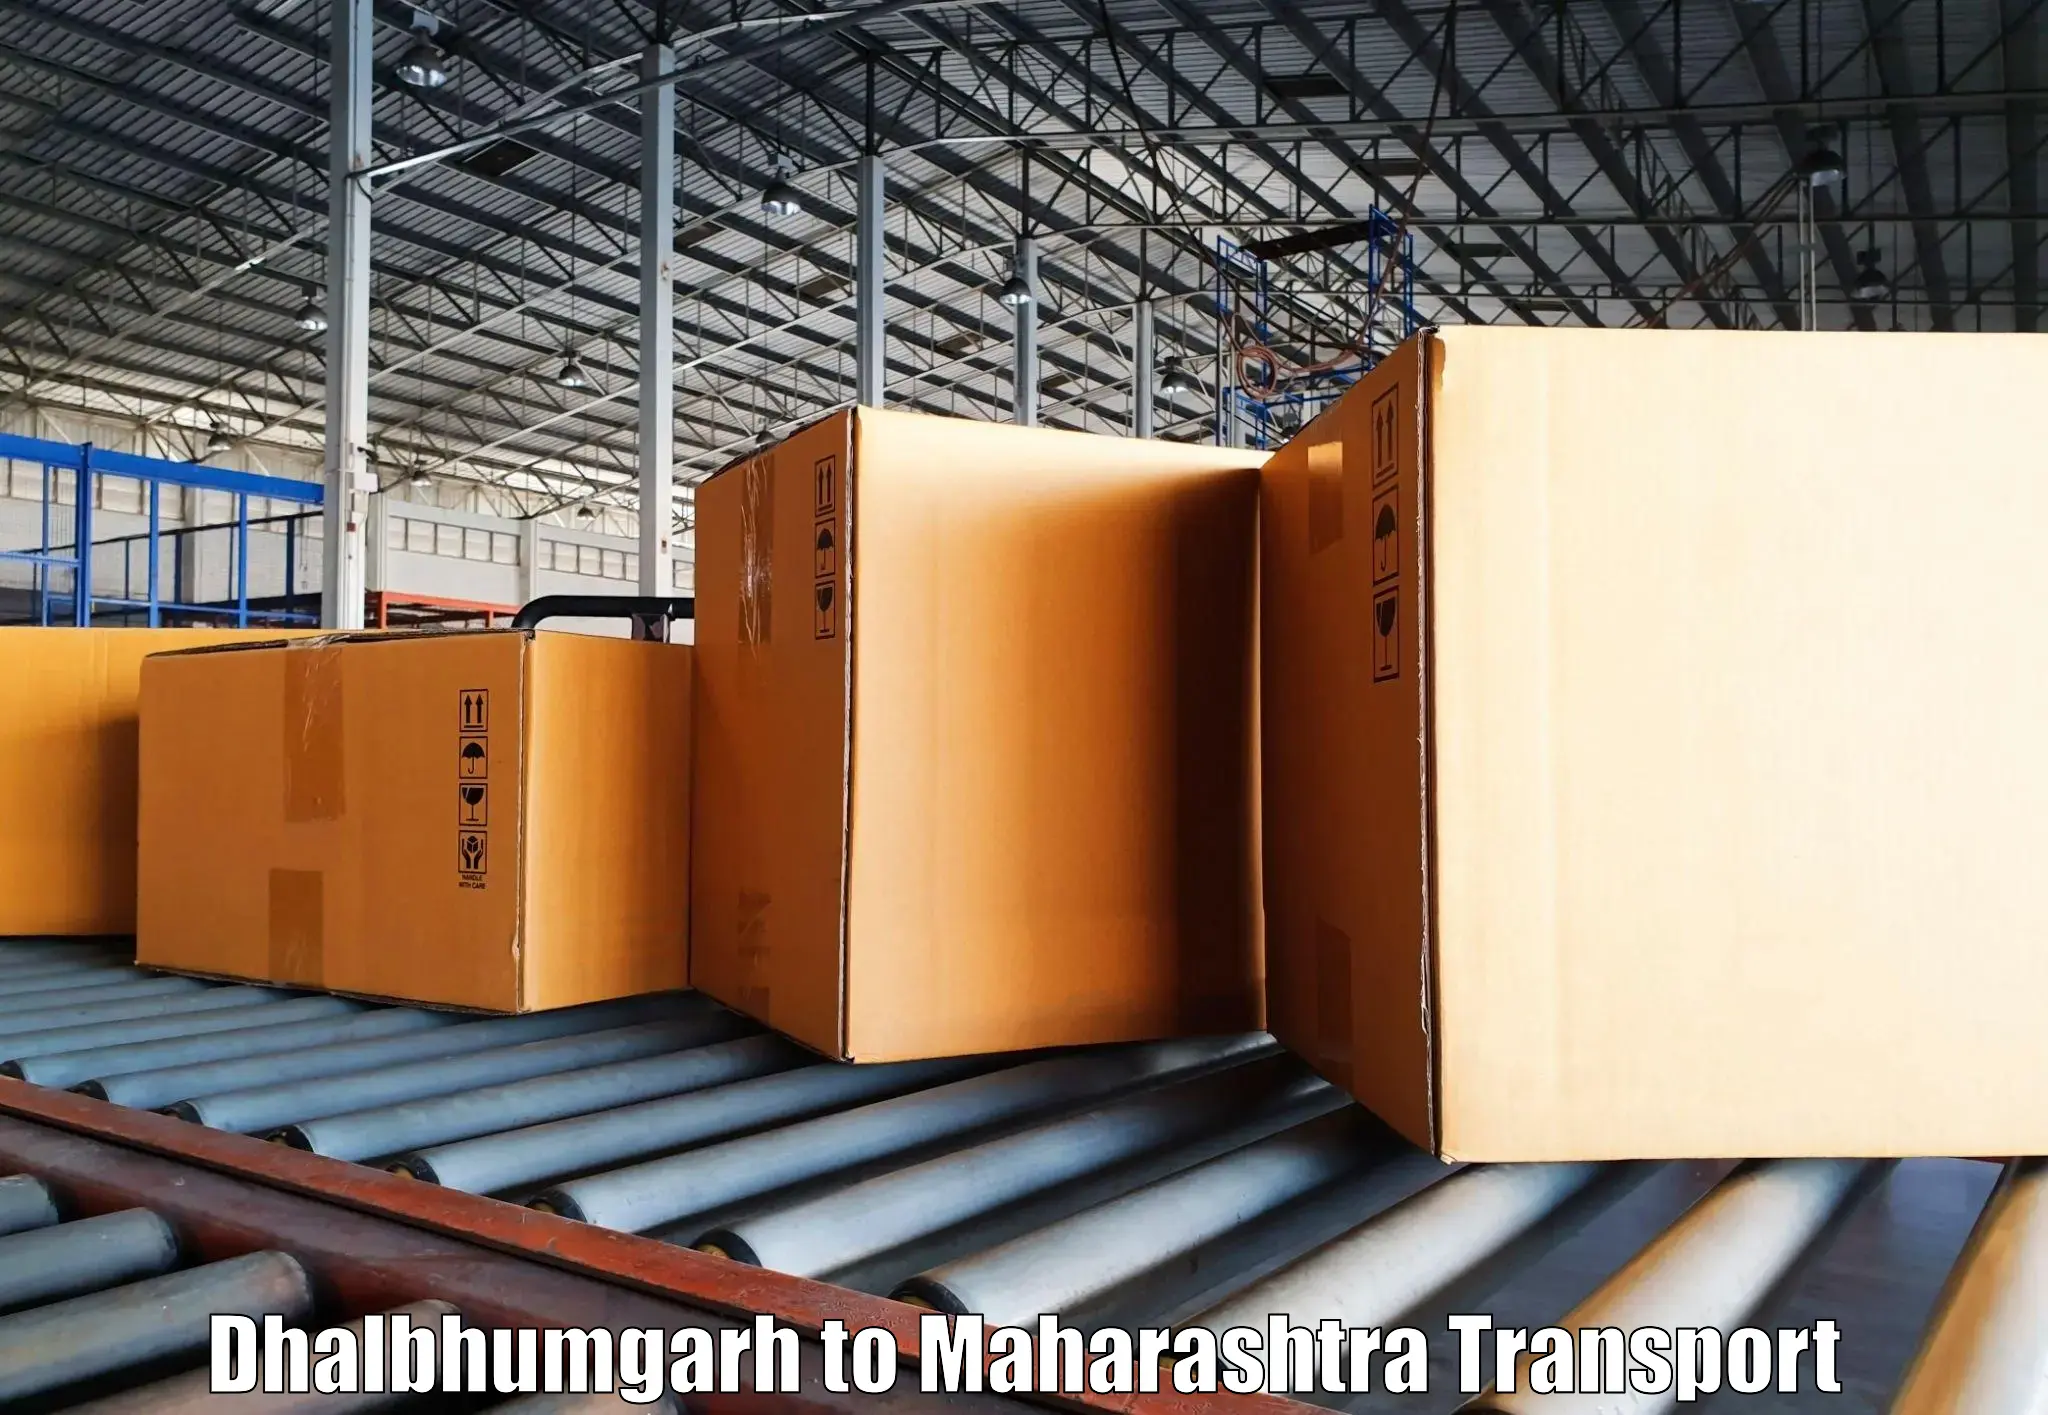 Truck transport companies in India Dhalbhumgarh to Mumbai Port